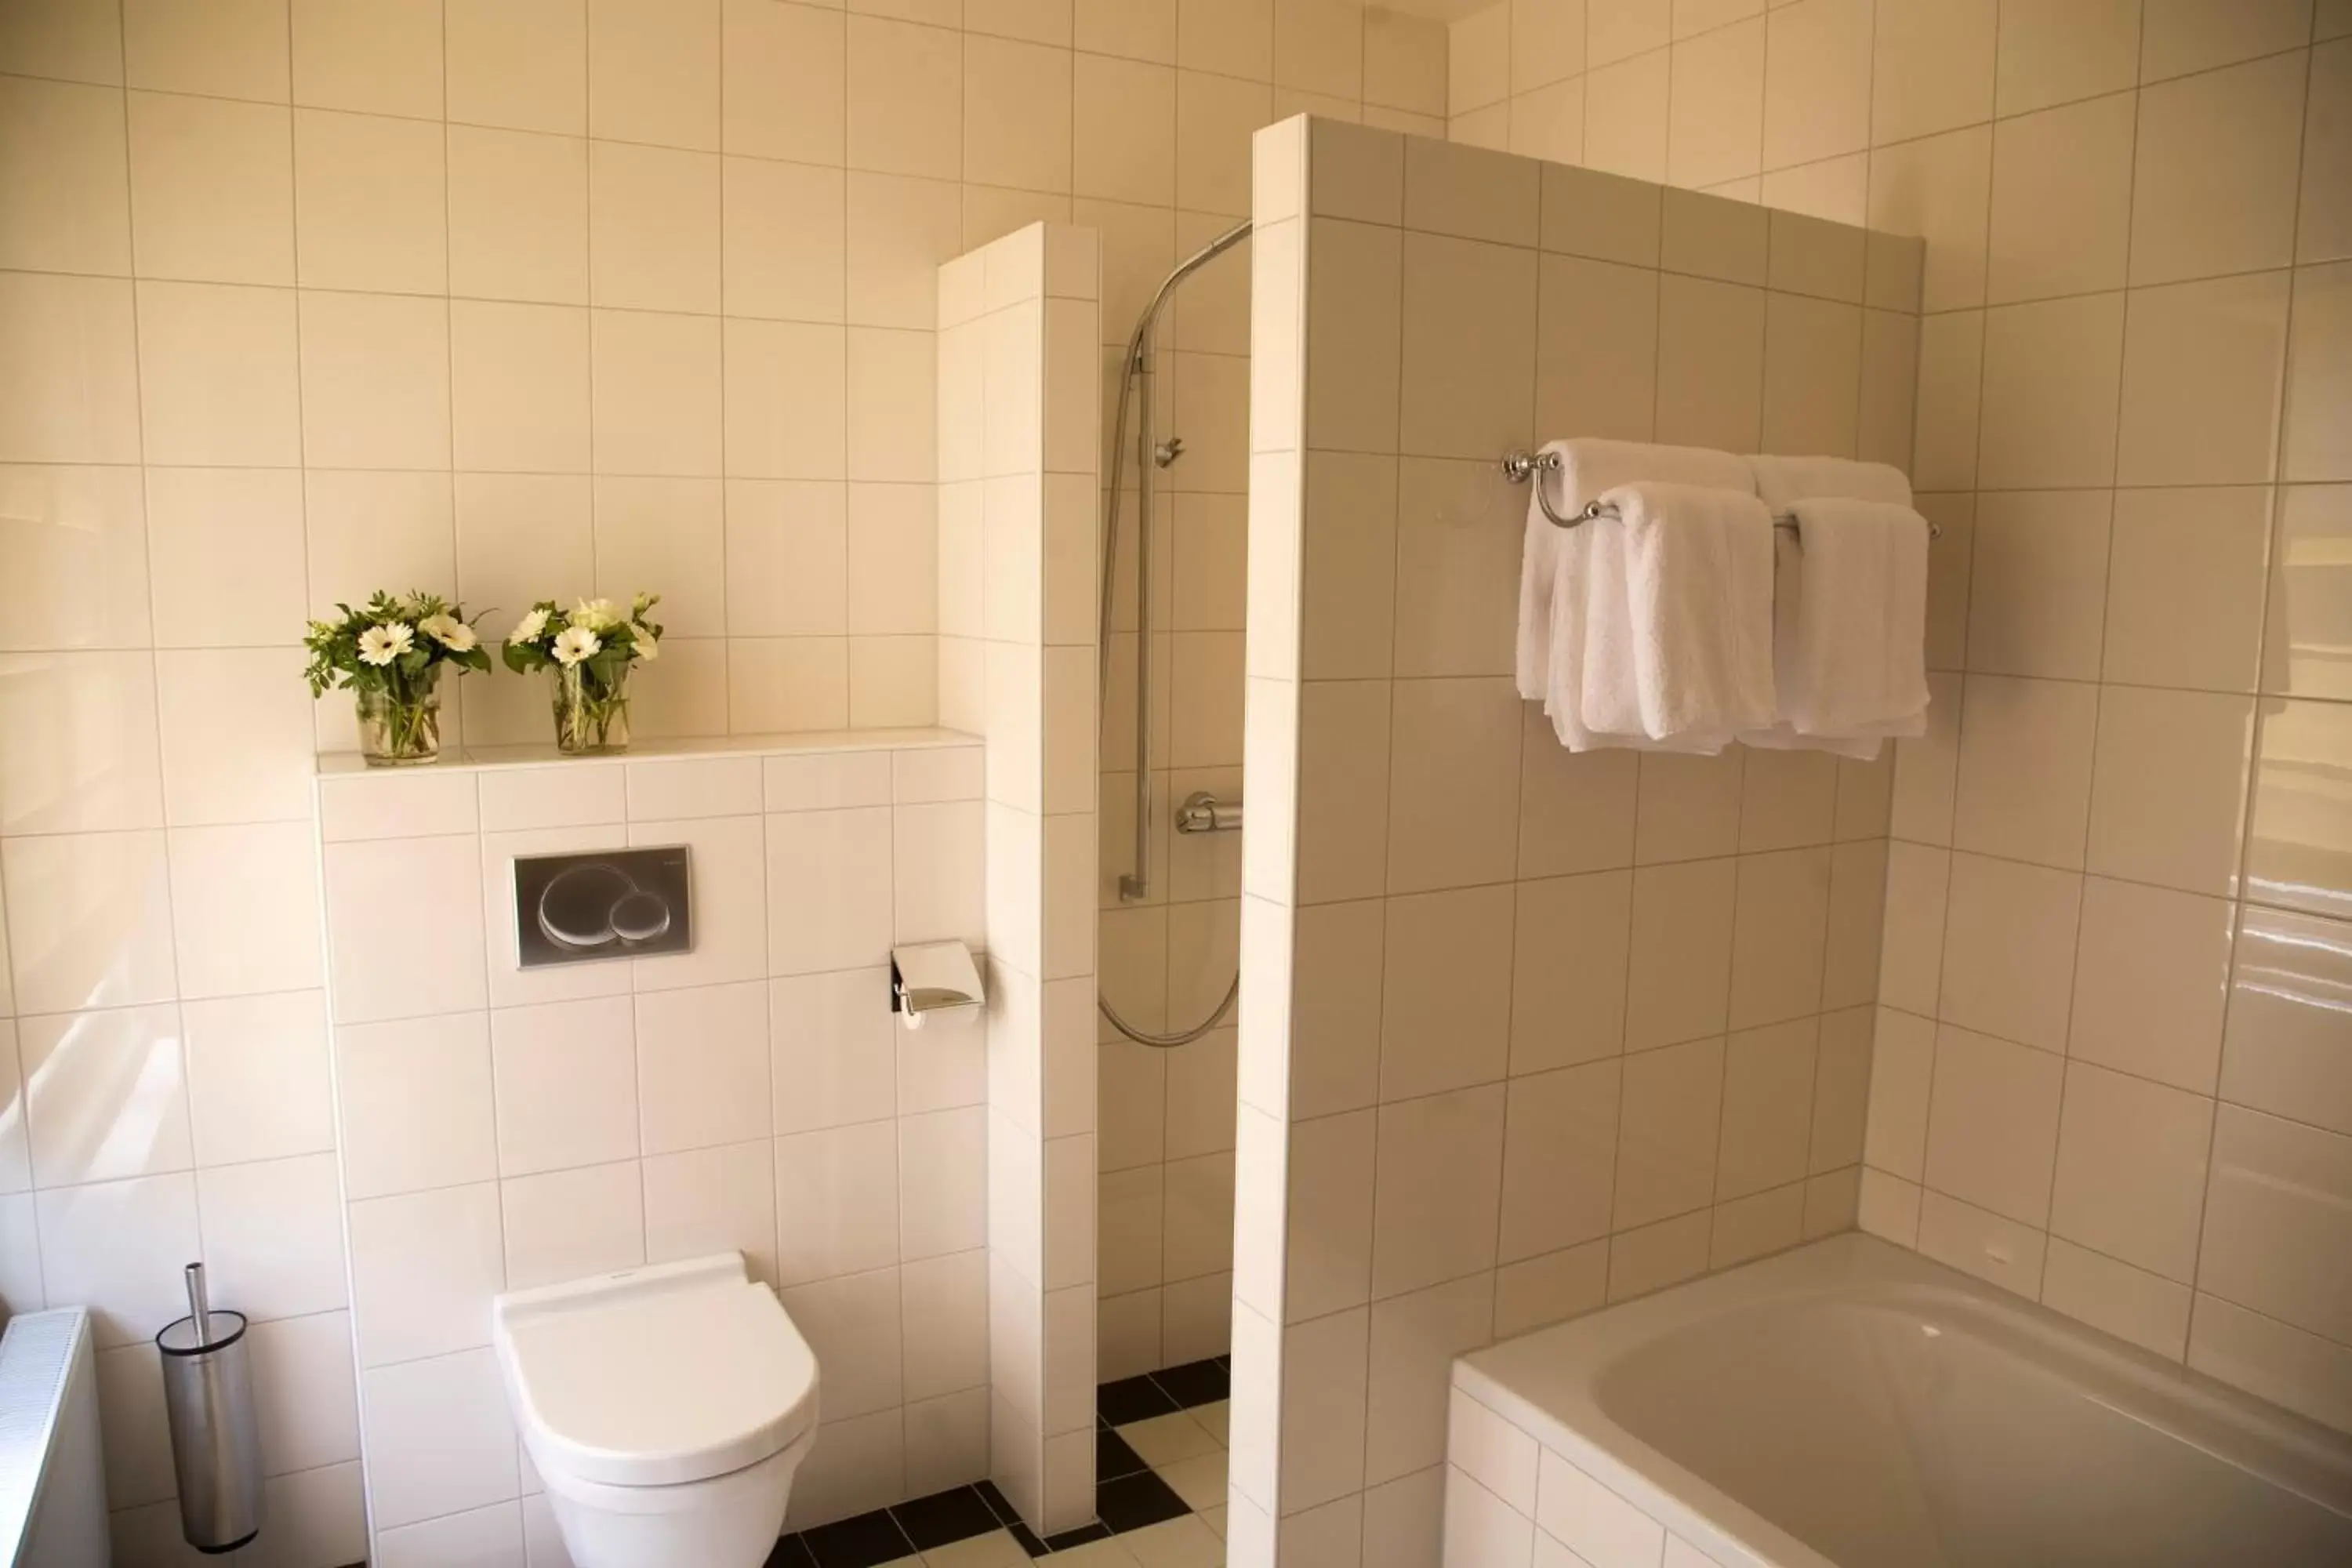 Shower, Bathroom in Stadspaleis Hotel & Restaurant OldRuitenborgh